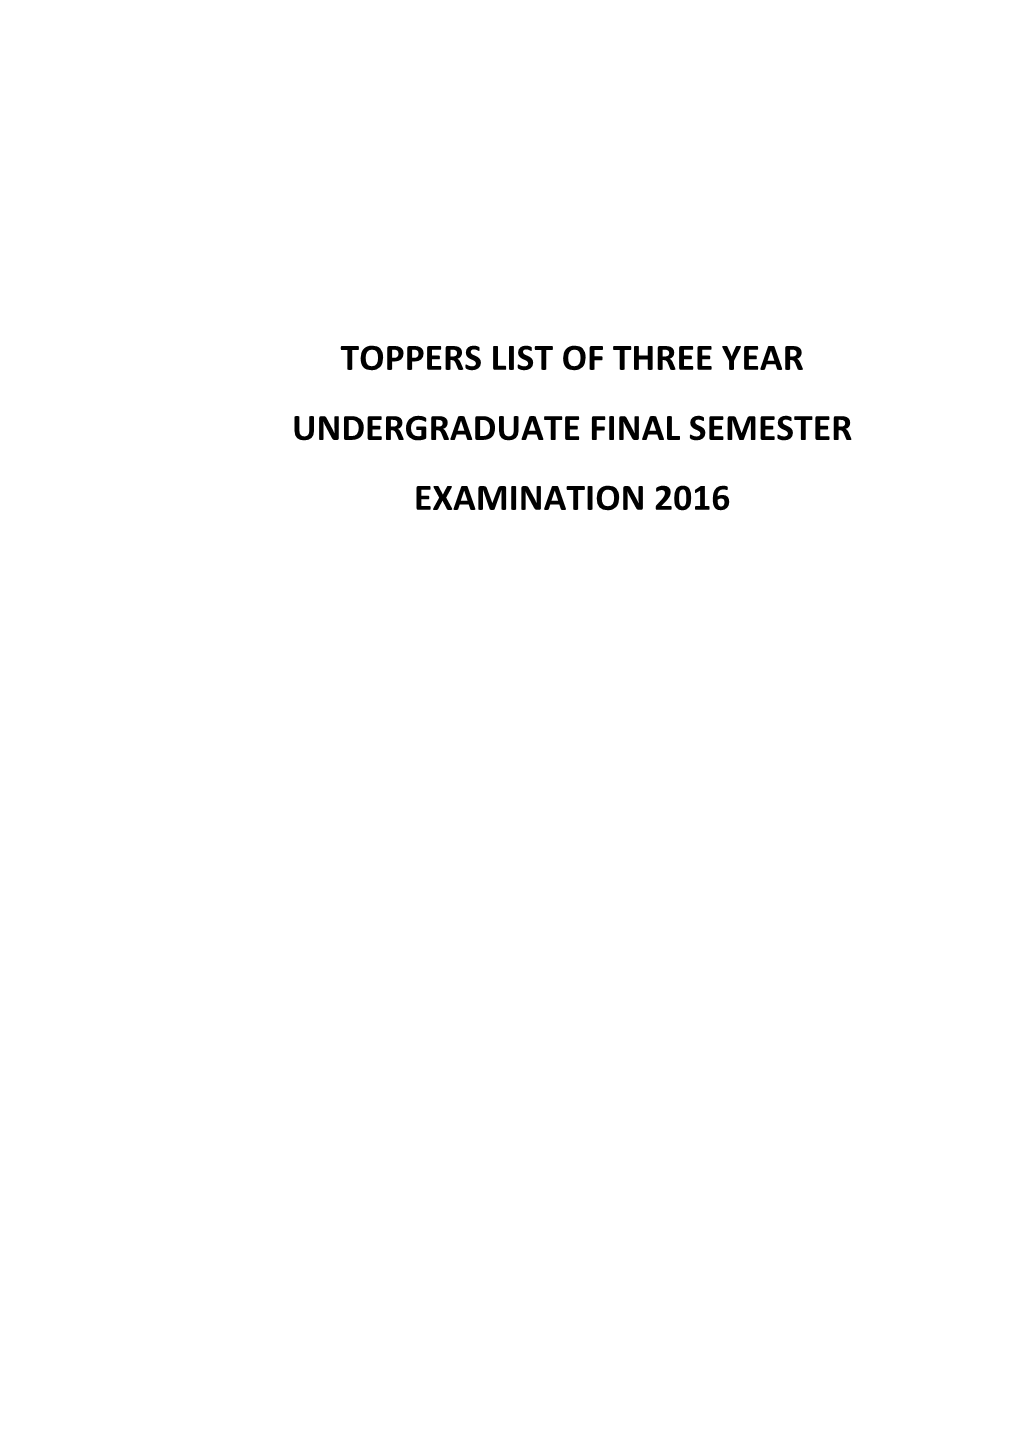 TOPPERS LIST UG Semester Exam 2016.Pdf